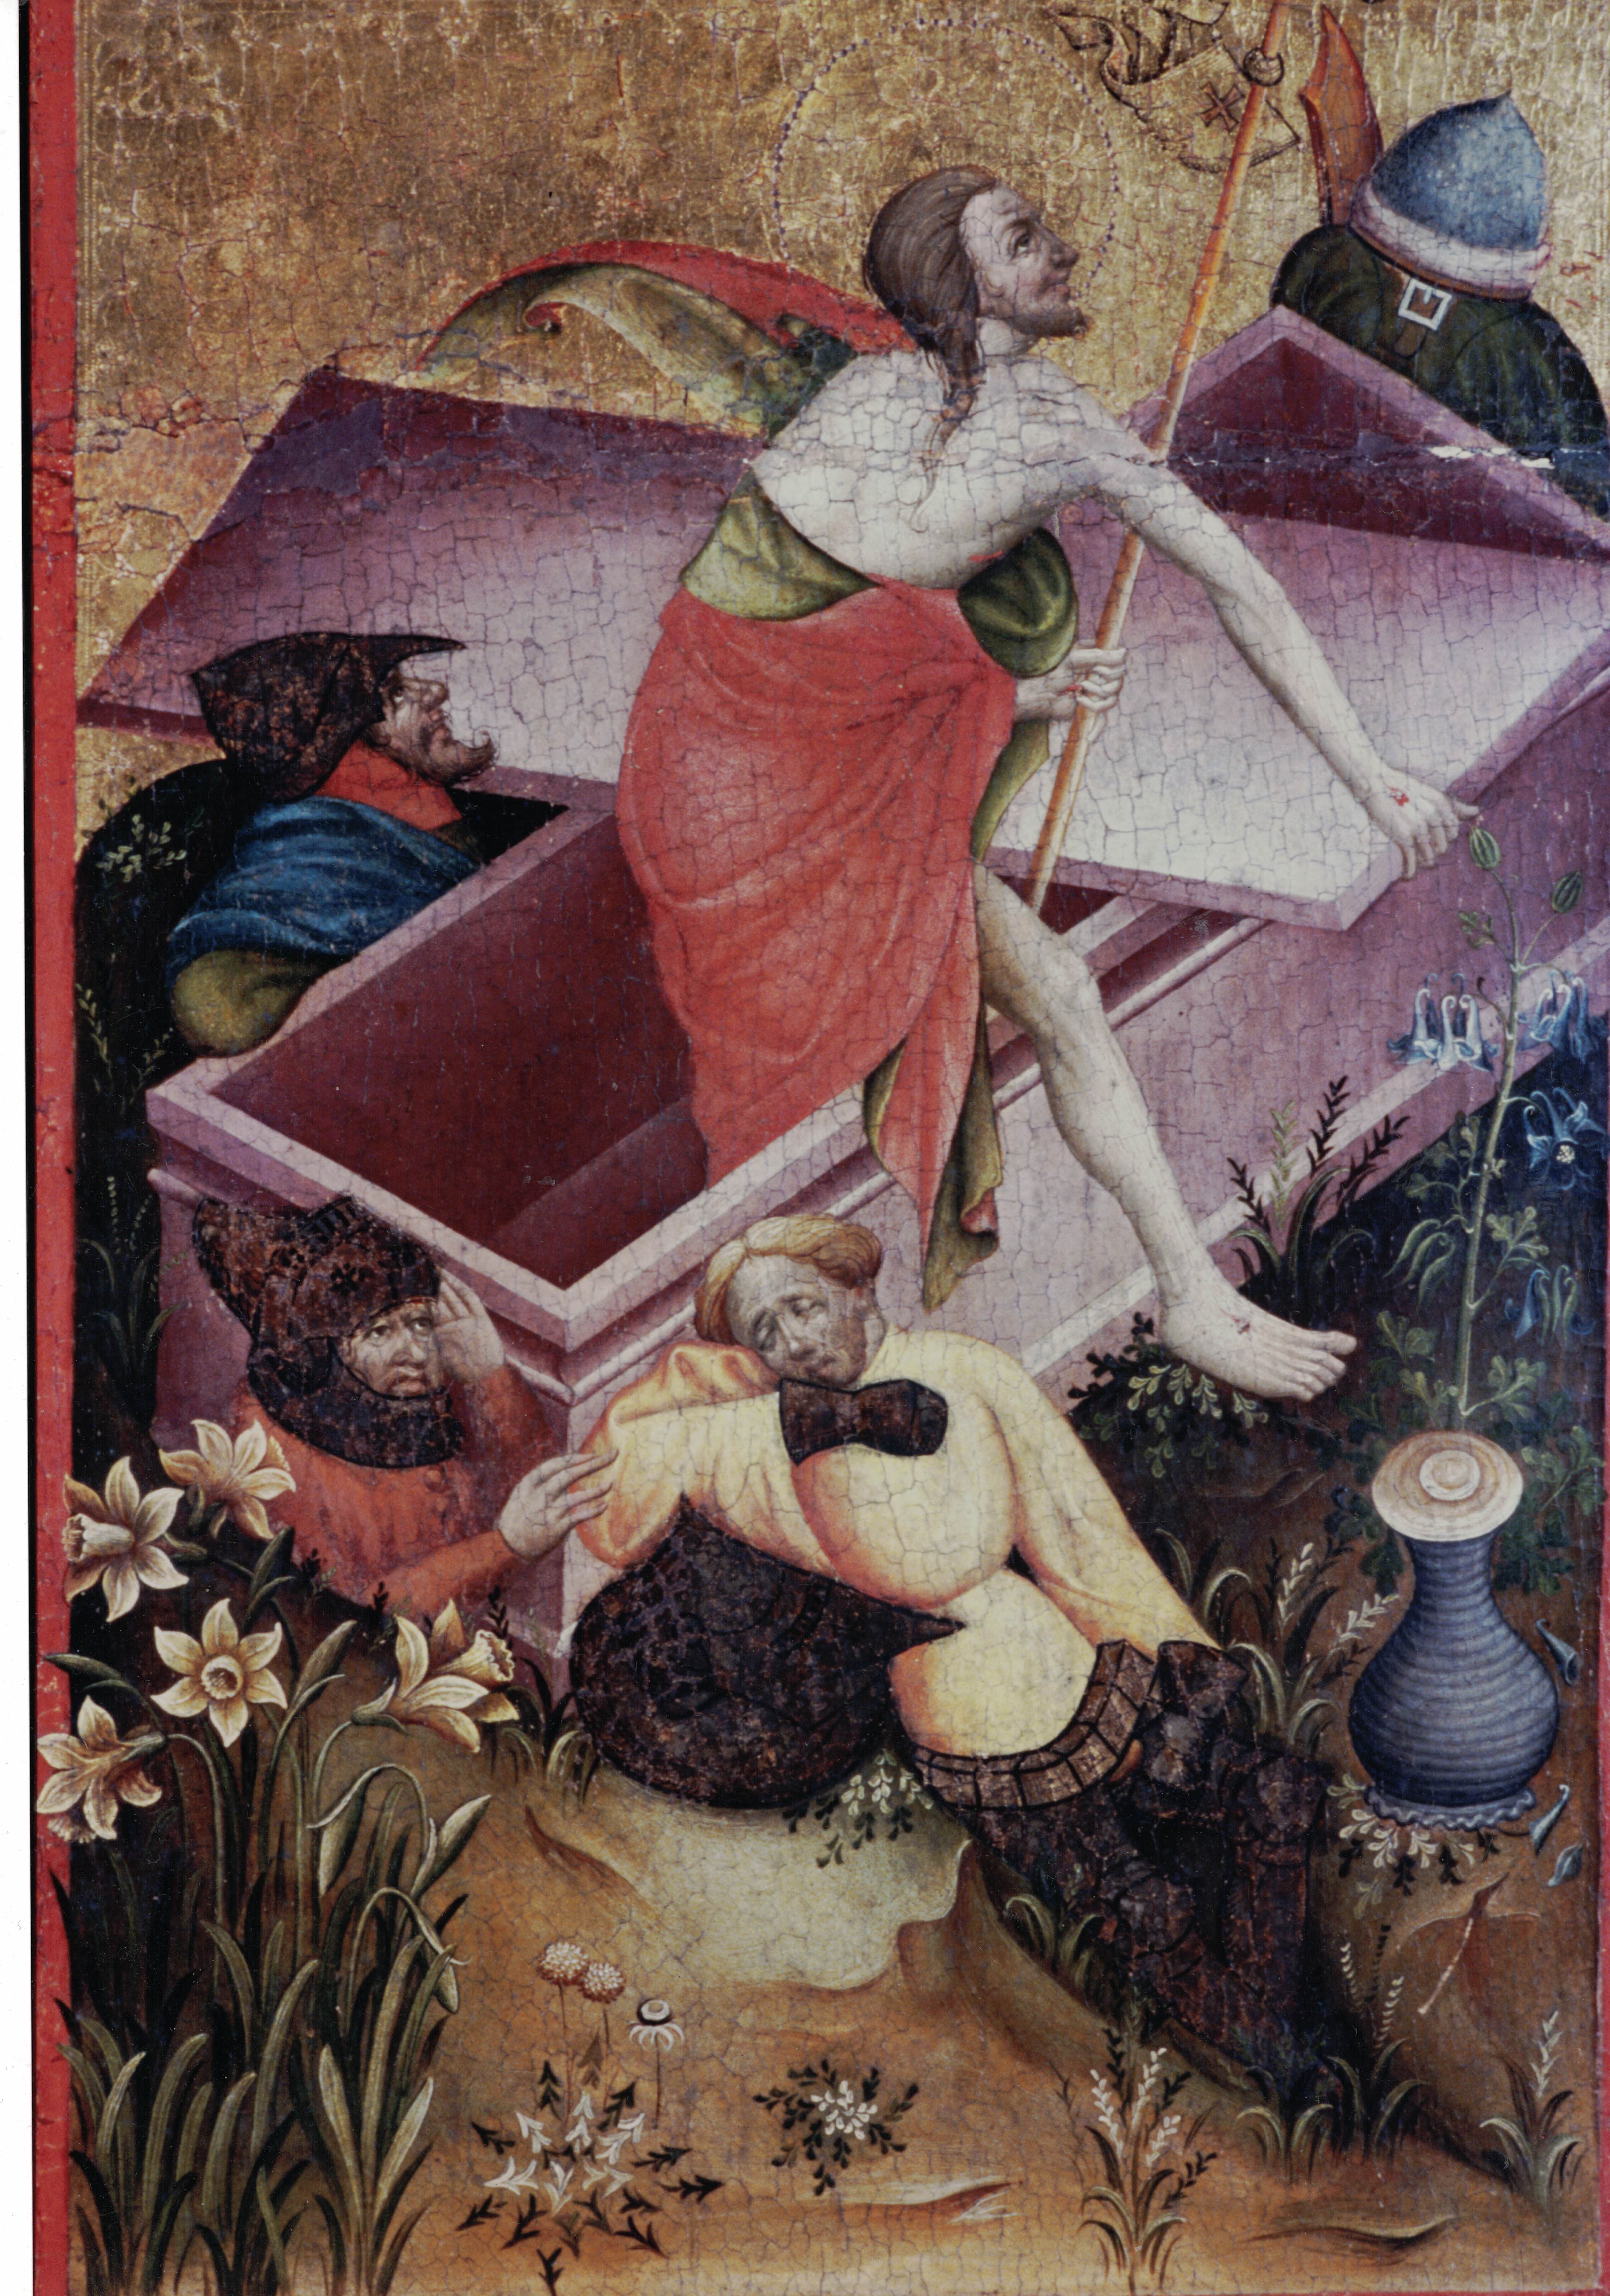 Die Auferstehung Christi - ein Ausschnitt aus dem Daruper Altarbild, das vor rund 600 Jahren gemalt wurde.